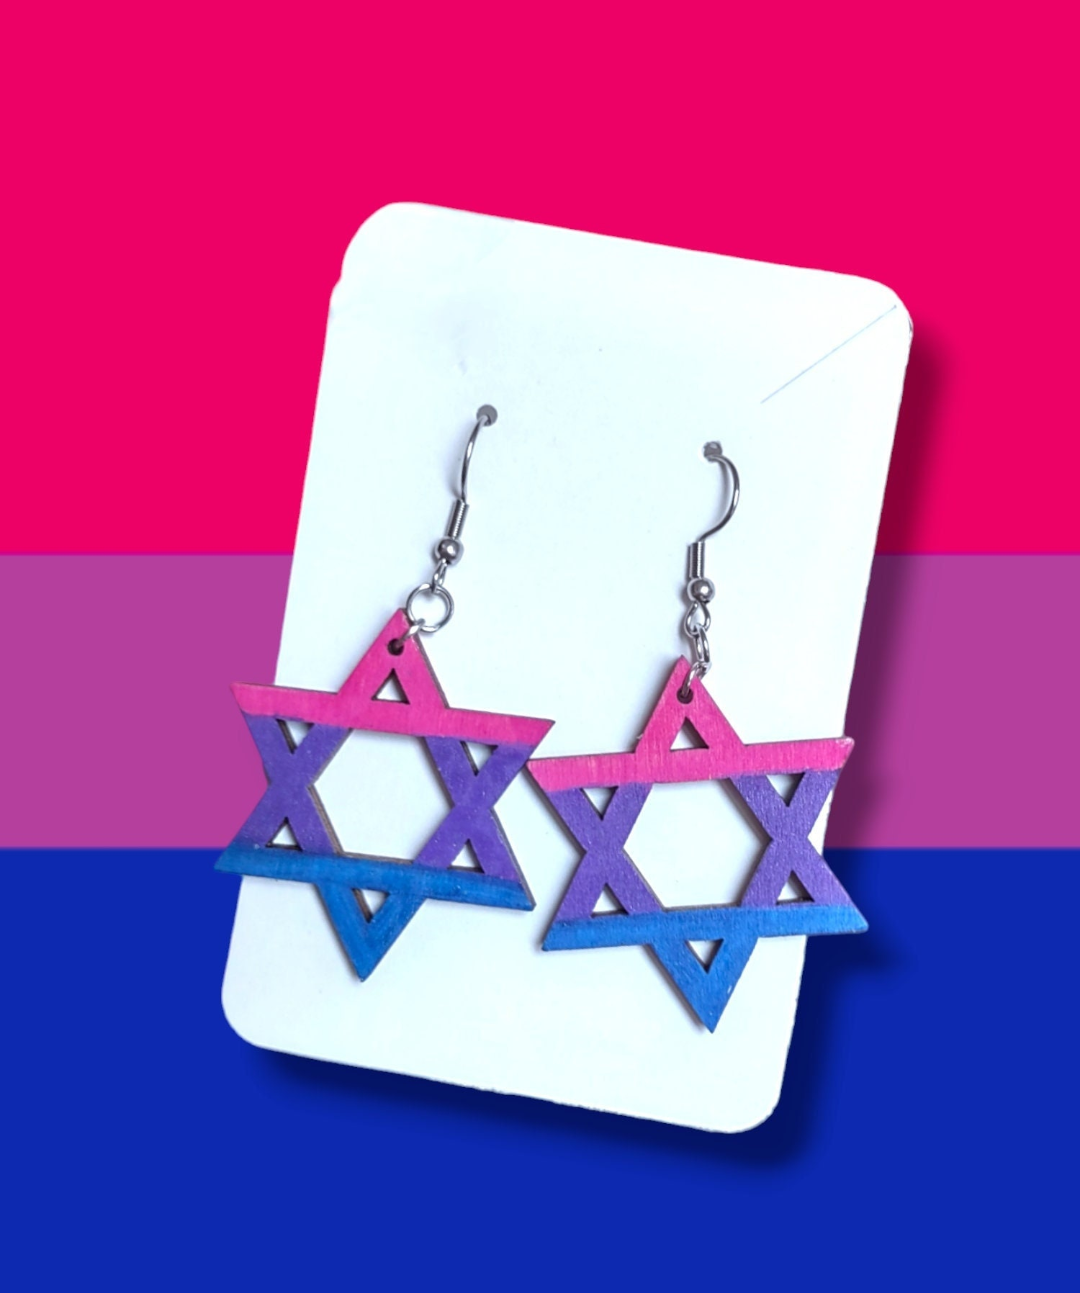 Bisexual Flag Wooden Earrings